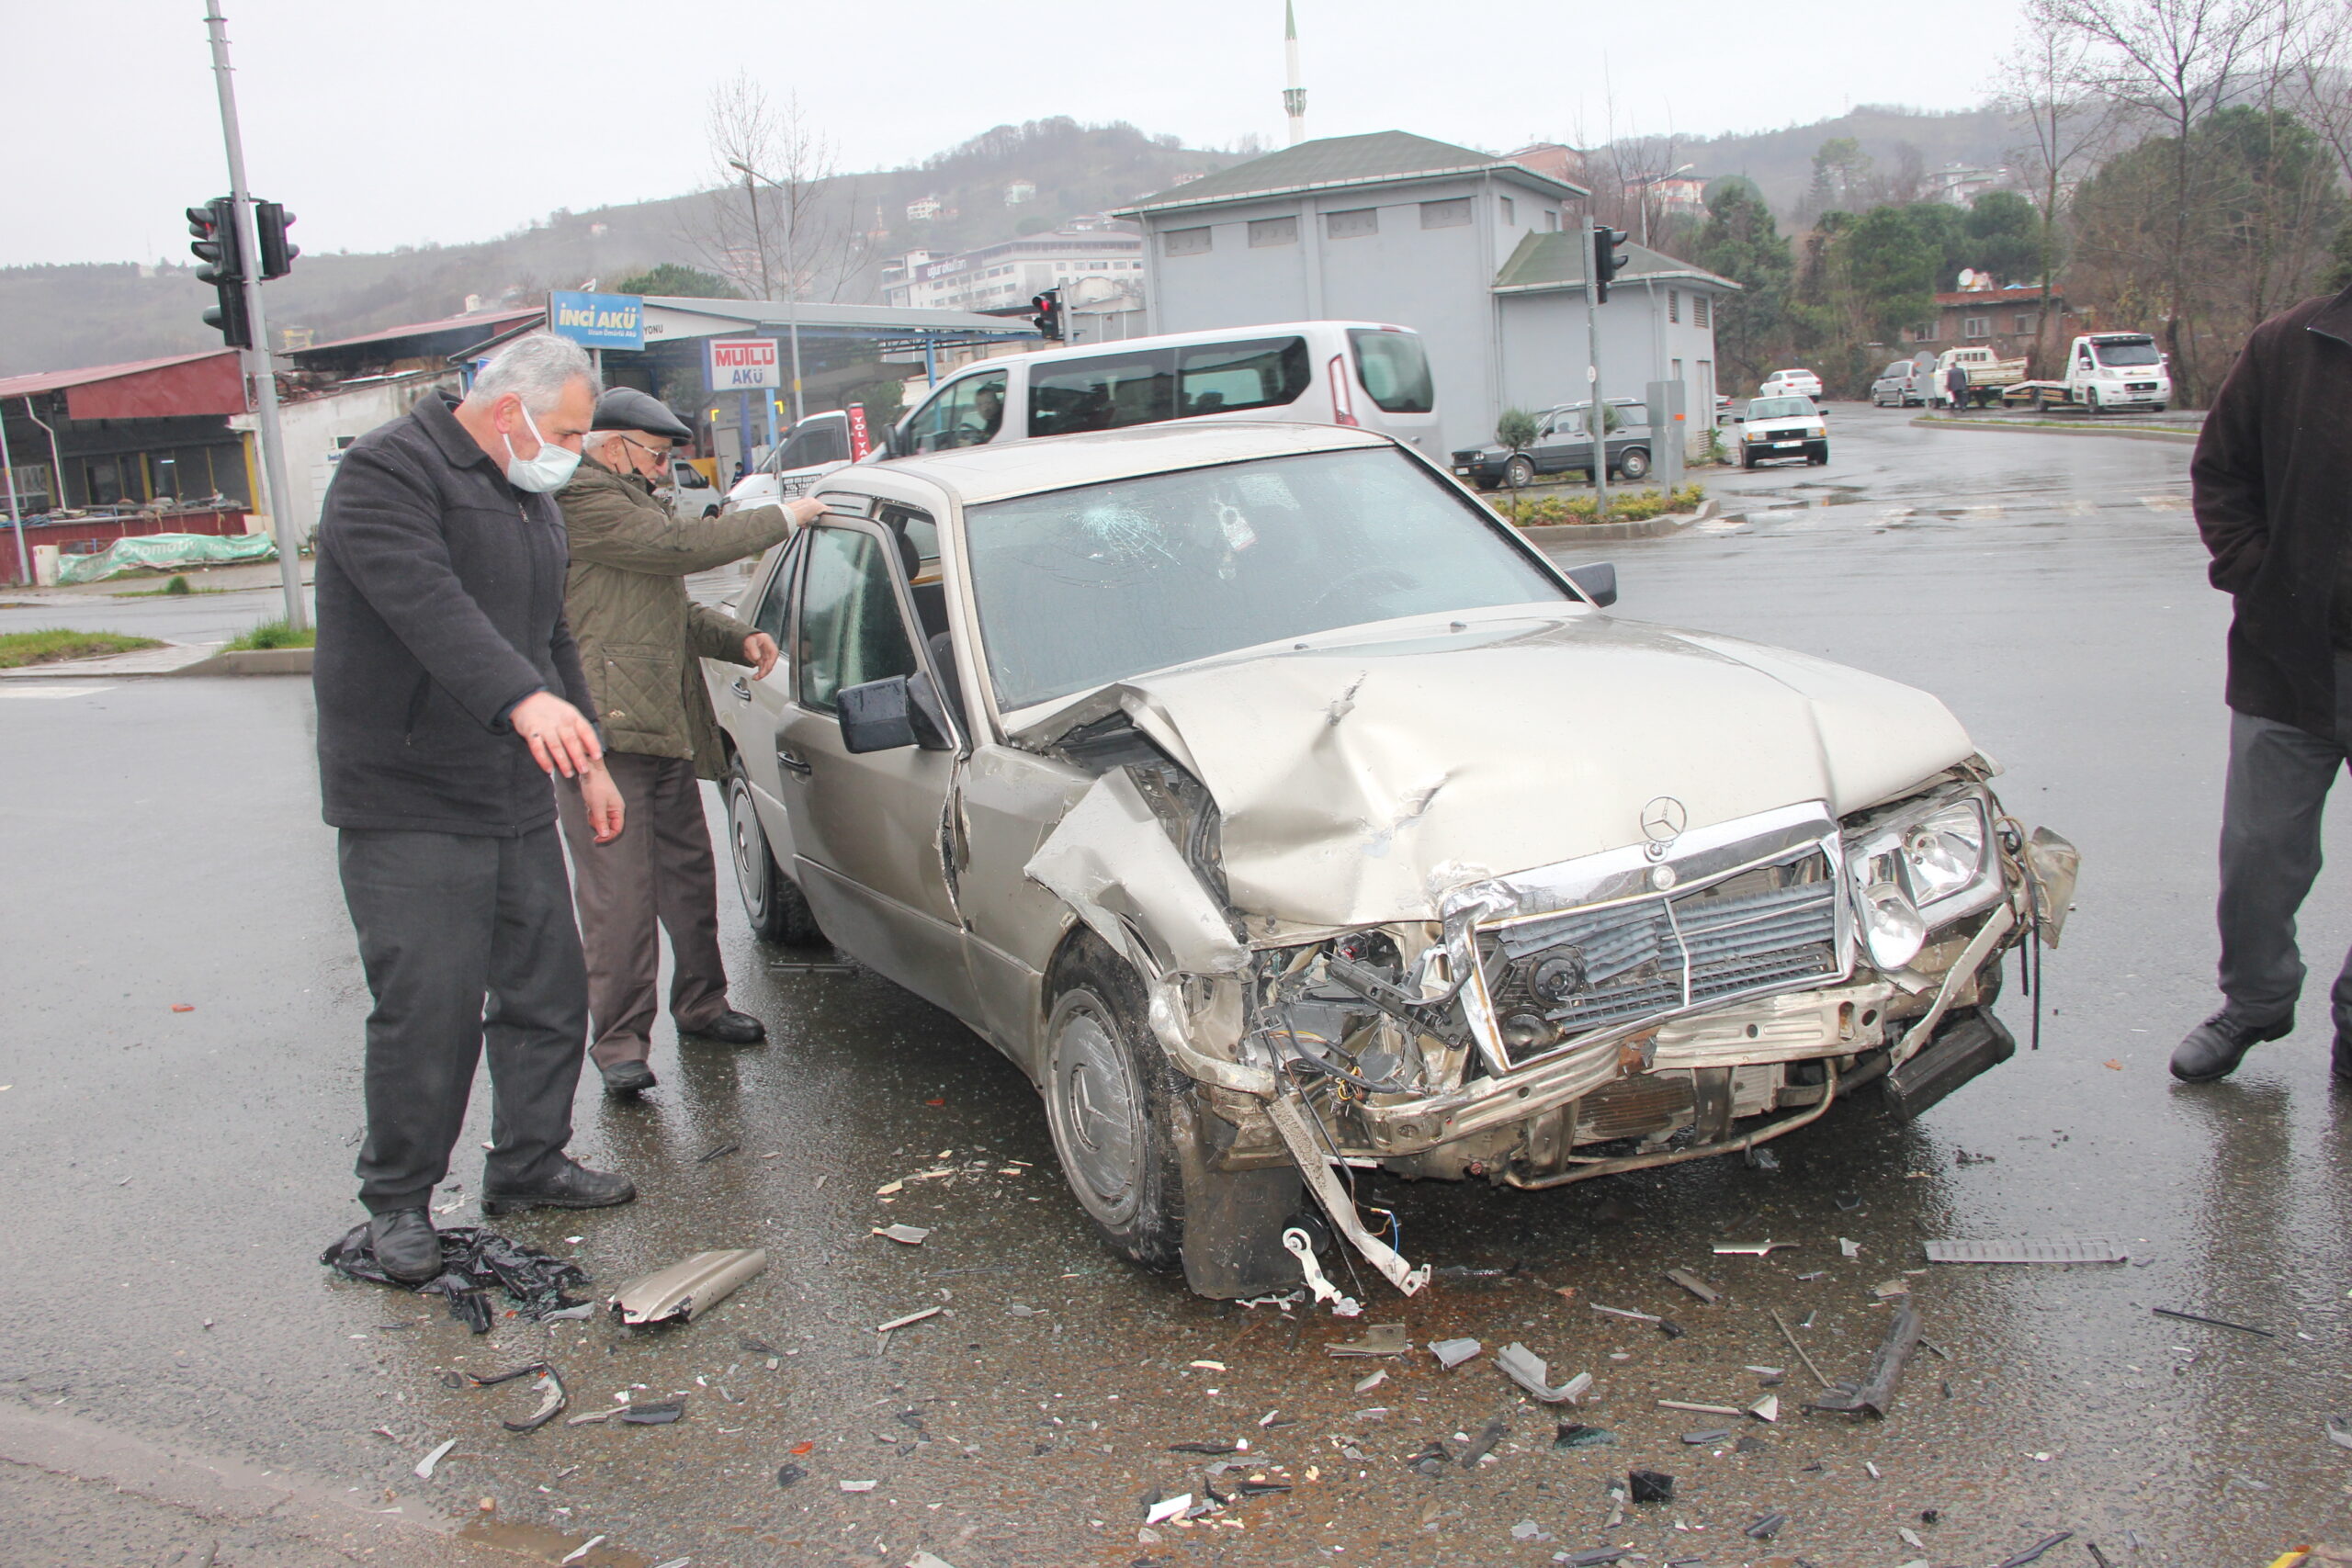 Ordu’da otomobillerin çarpışması sonucu 2 kişi yaralandı